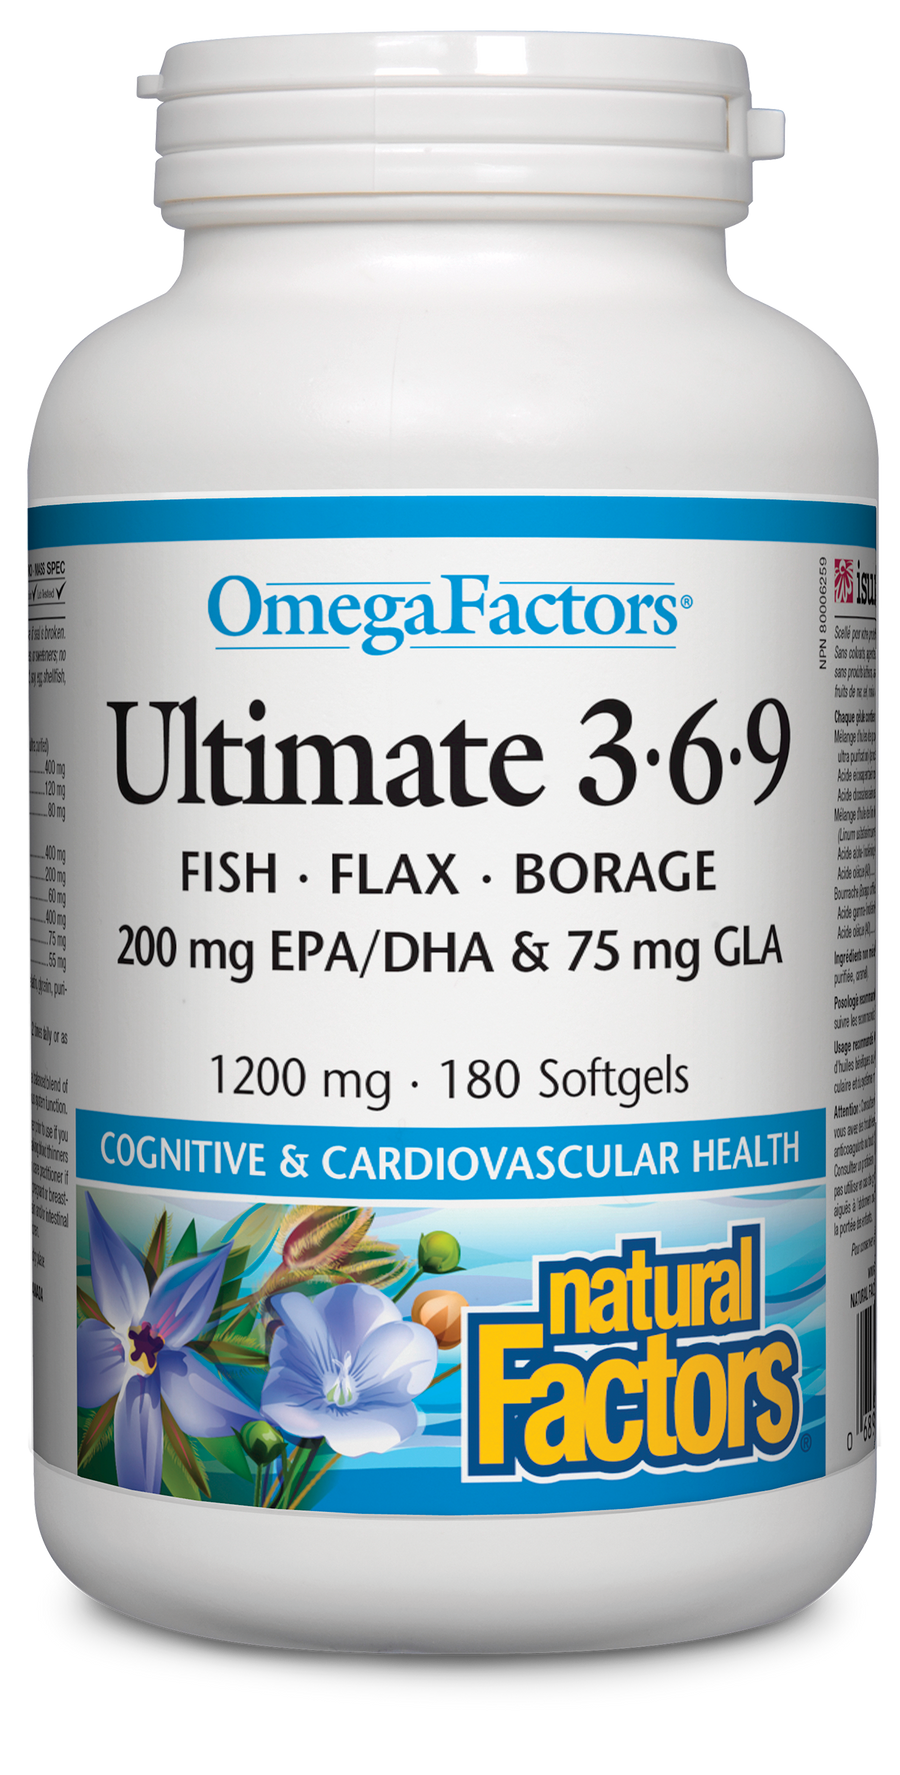 Natural Factors Ultimate 3-6-9, OmegaFactors 180 Softgels